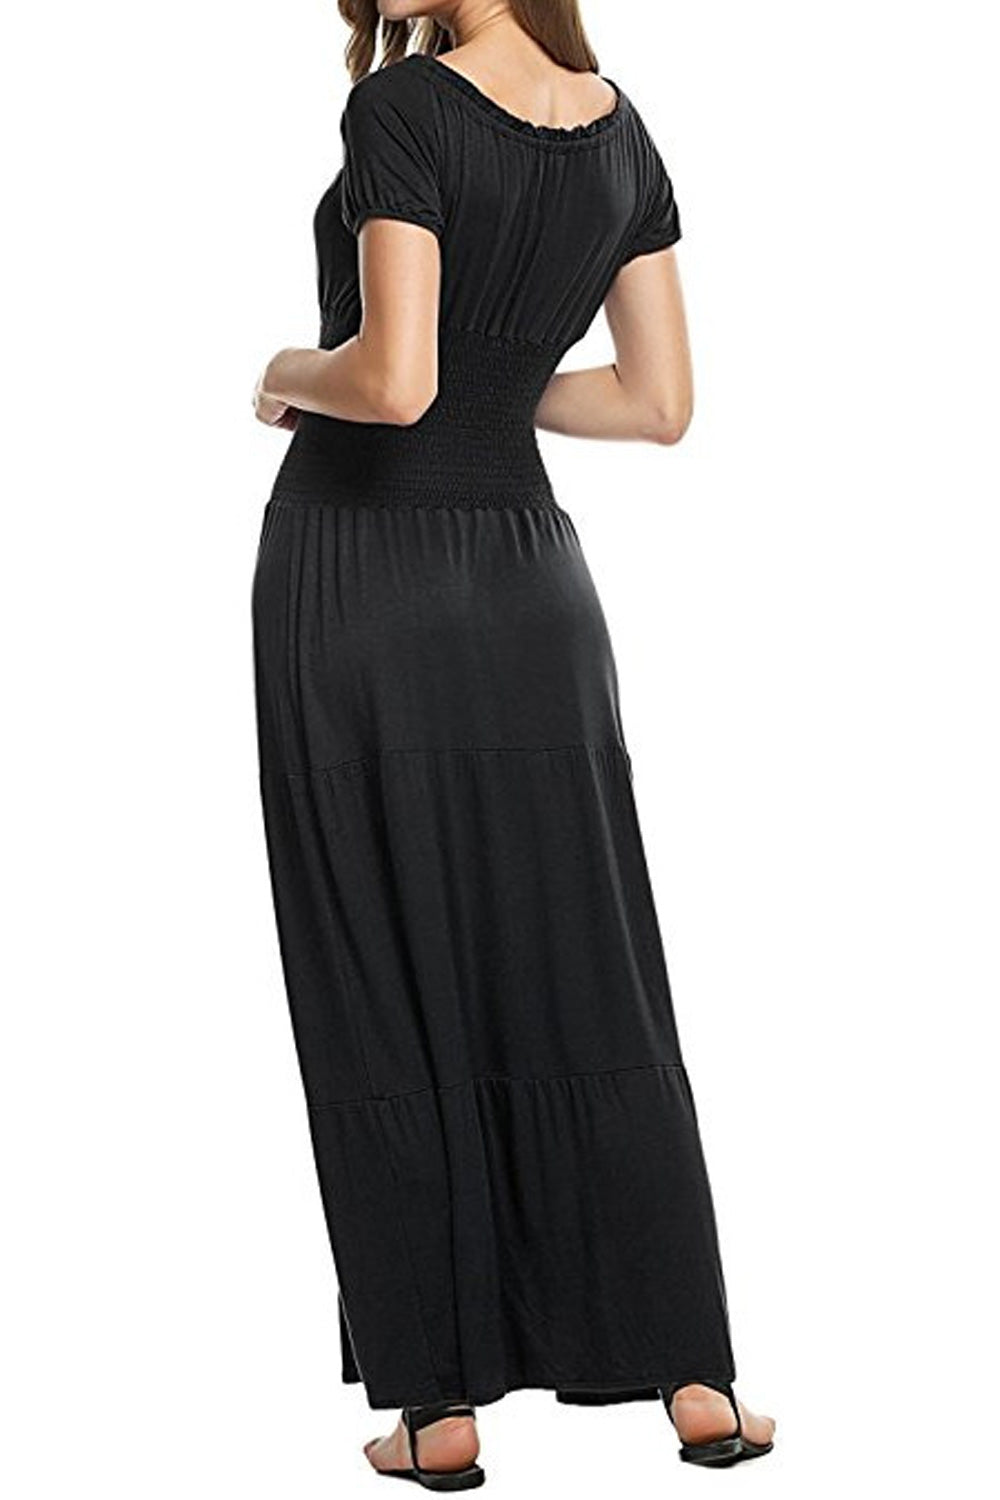 Ketty More Women Short Sleeve Flattering Fit Pleated Long Dress-KMWD337